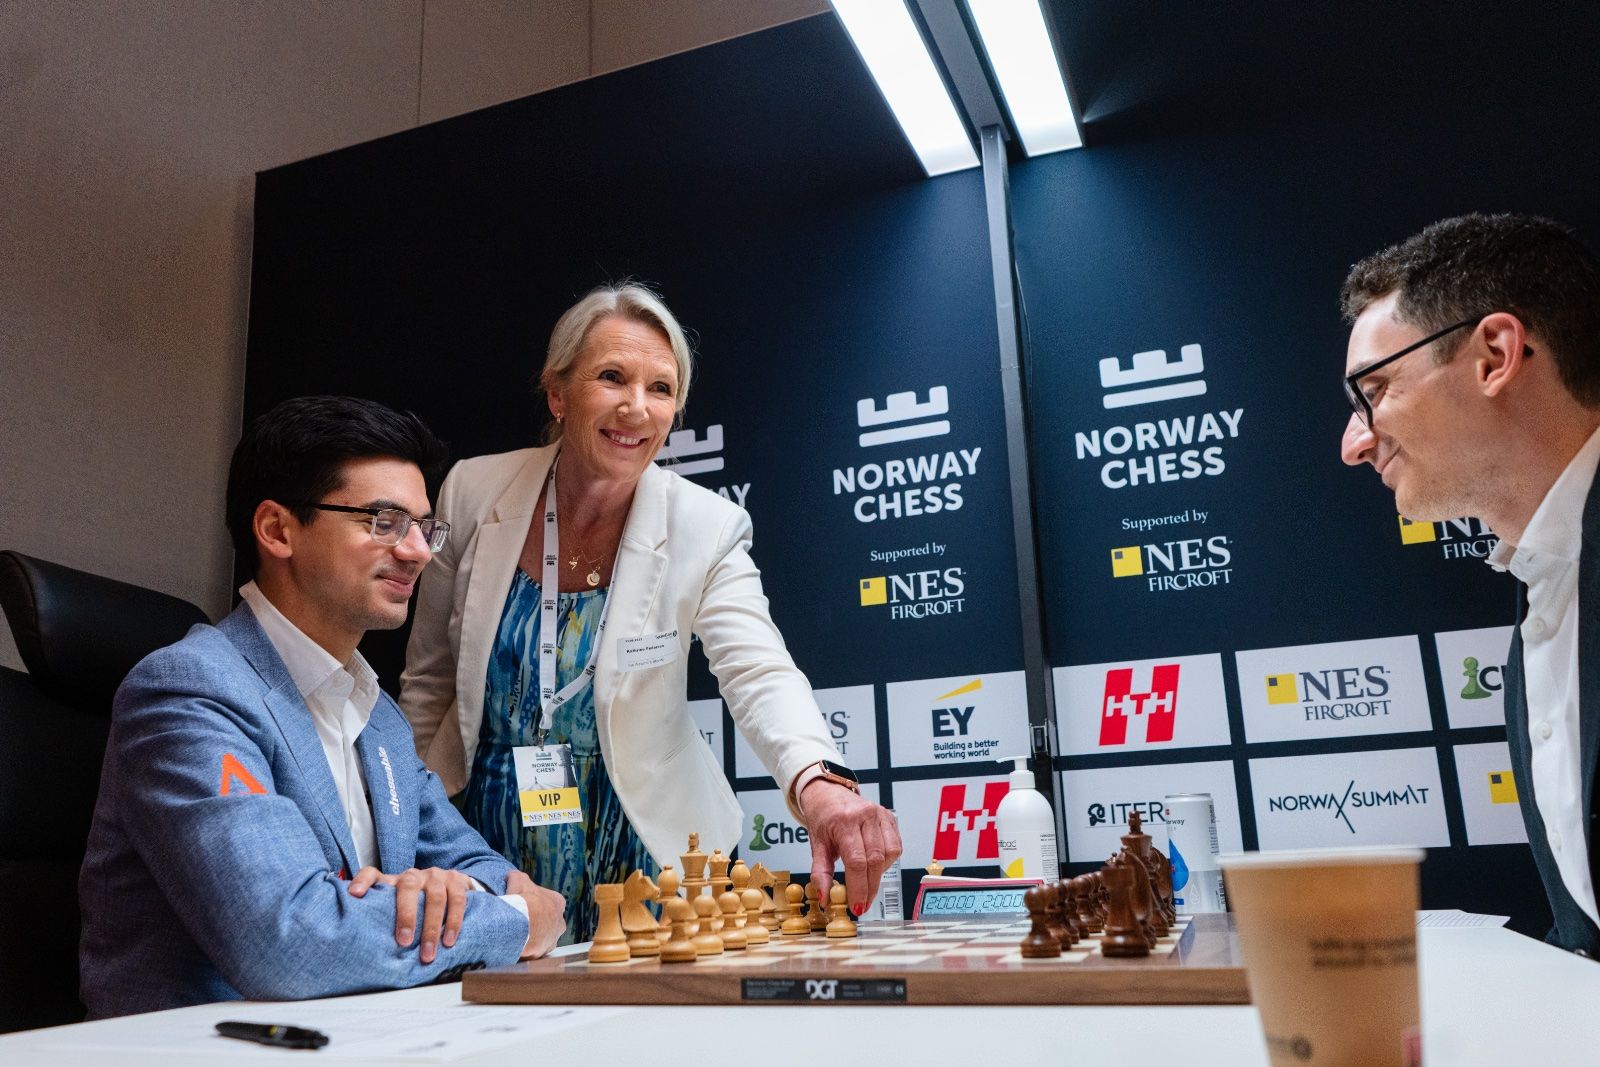 Hikaru Nakamura wins Norway Chess 2023, defeating Fabiano Caruana